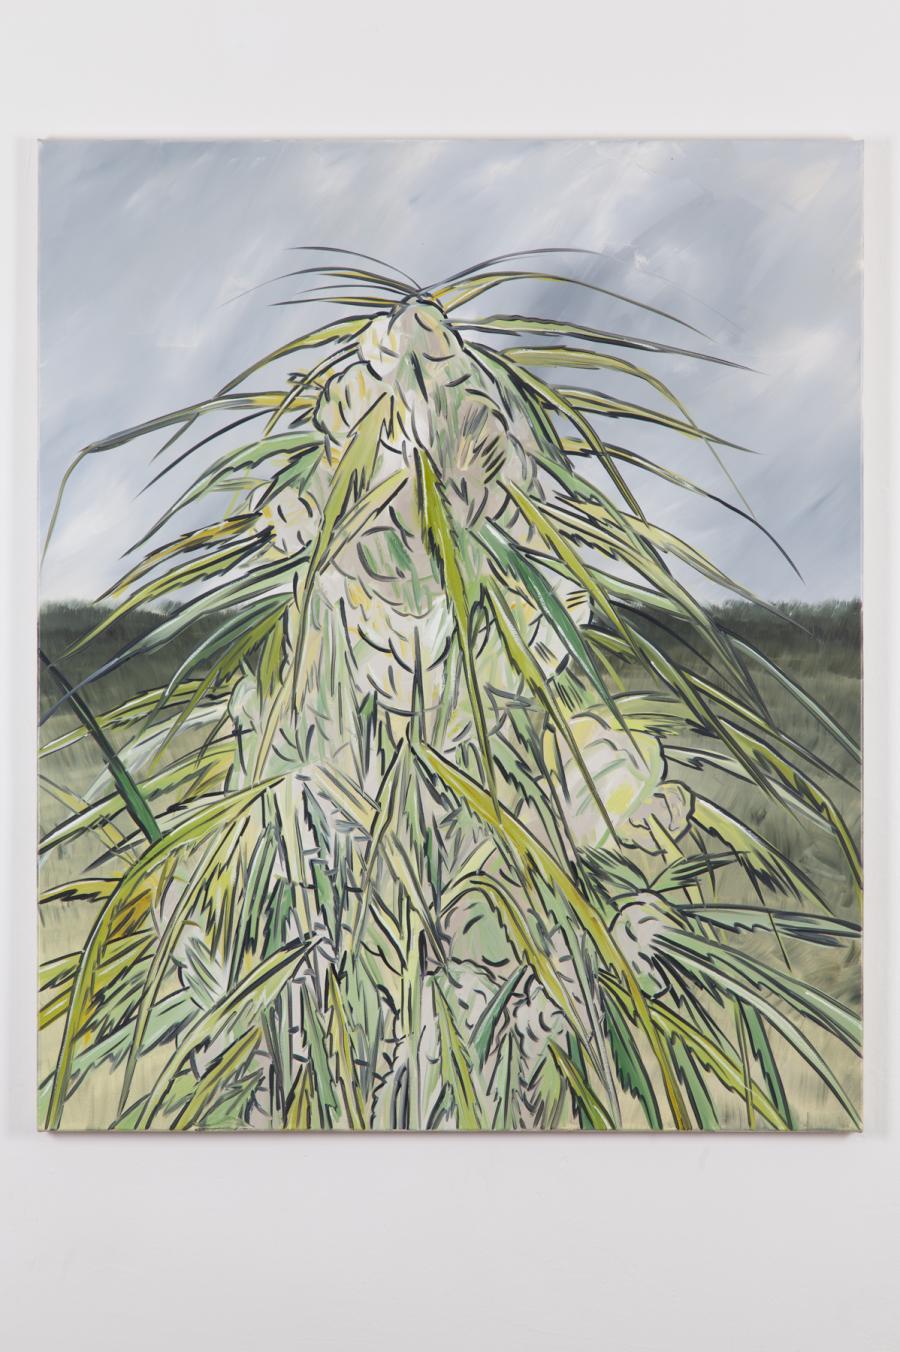 Alex Ruthner, oT, 120 x 100 cm, 2015